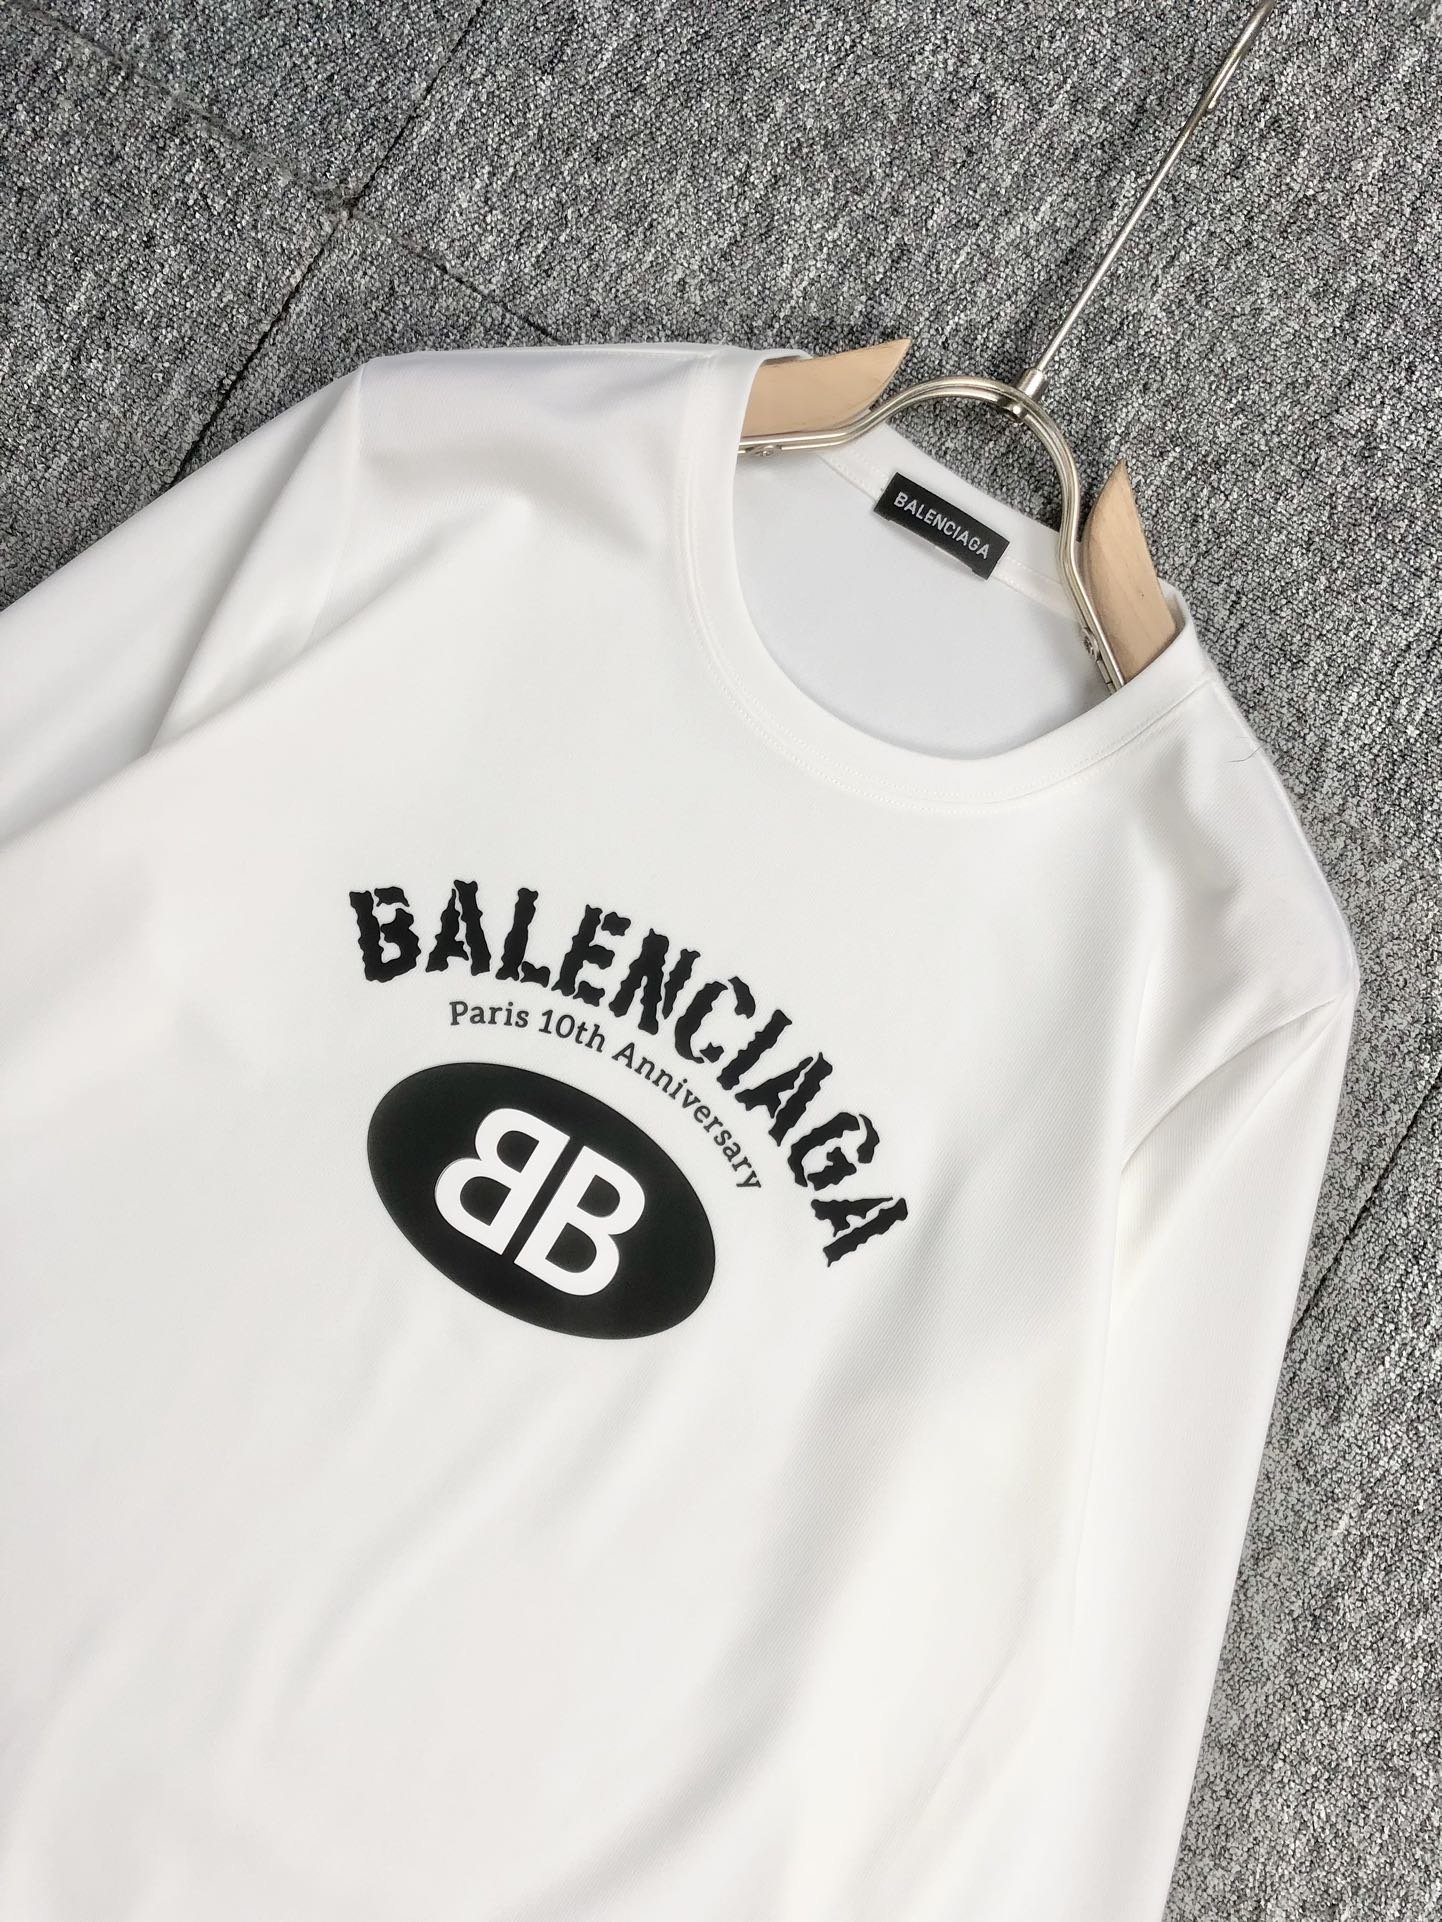 Balenciaga巴黎世家2023秋冬男士卫衣新品春季必备新品经典款套头卫衣甄选360g高克重卫衣面料